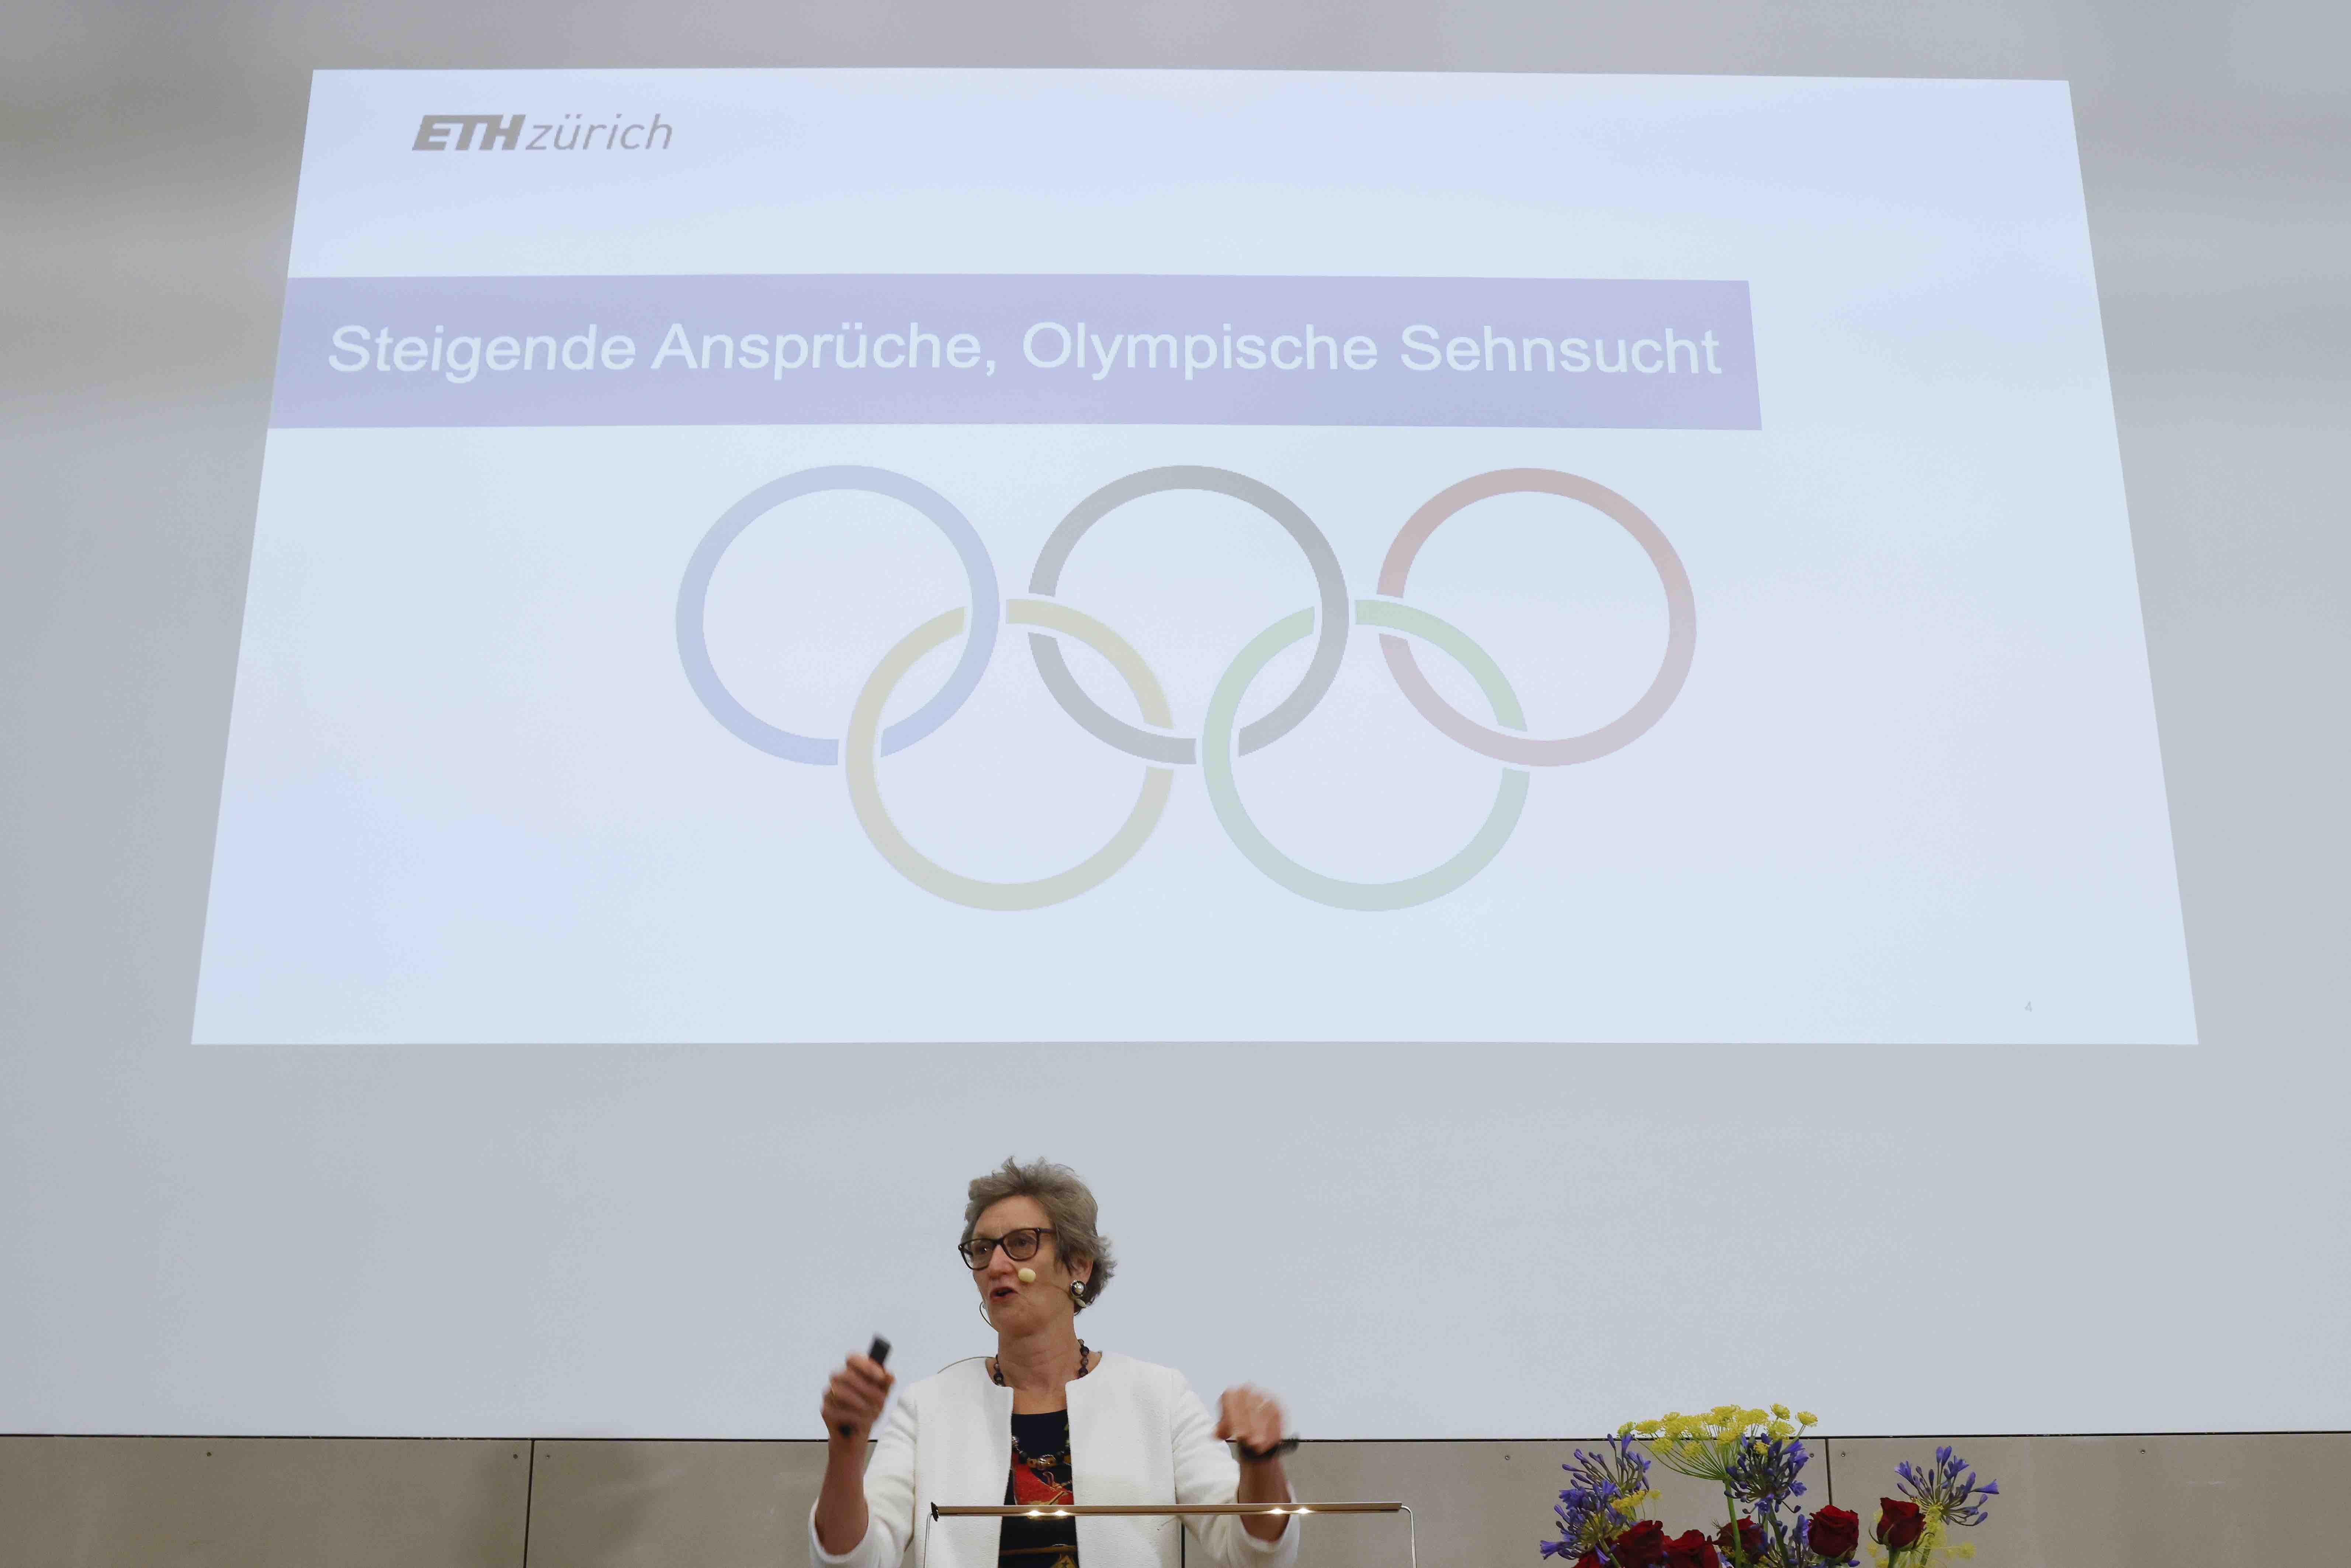 Professorin Sarah Springman während ihrem Referat in Bern. Hinter ihr ist die Projektion ihrer PowerPoint-Präsentation sichtbar. Sie zeigt die fünf Olympischen Ringe und den Titel «Steigende Ansprüche, Olympische Sehnsucht».